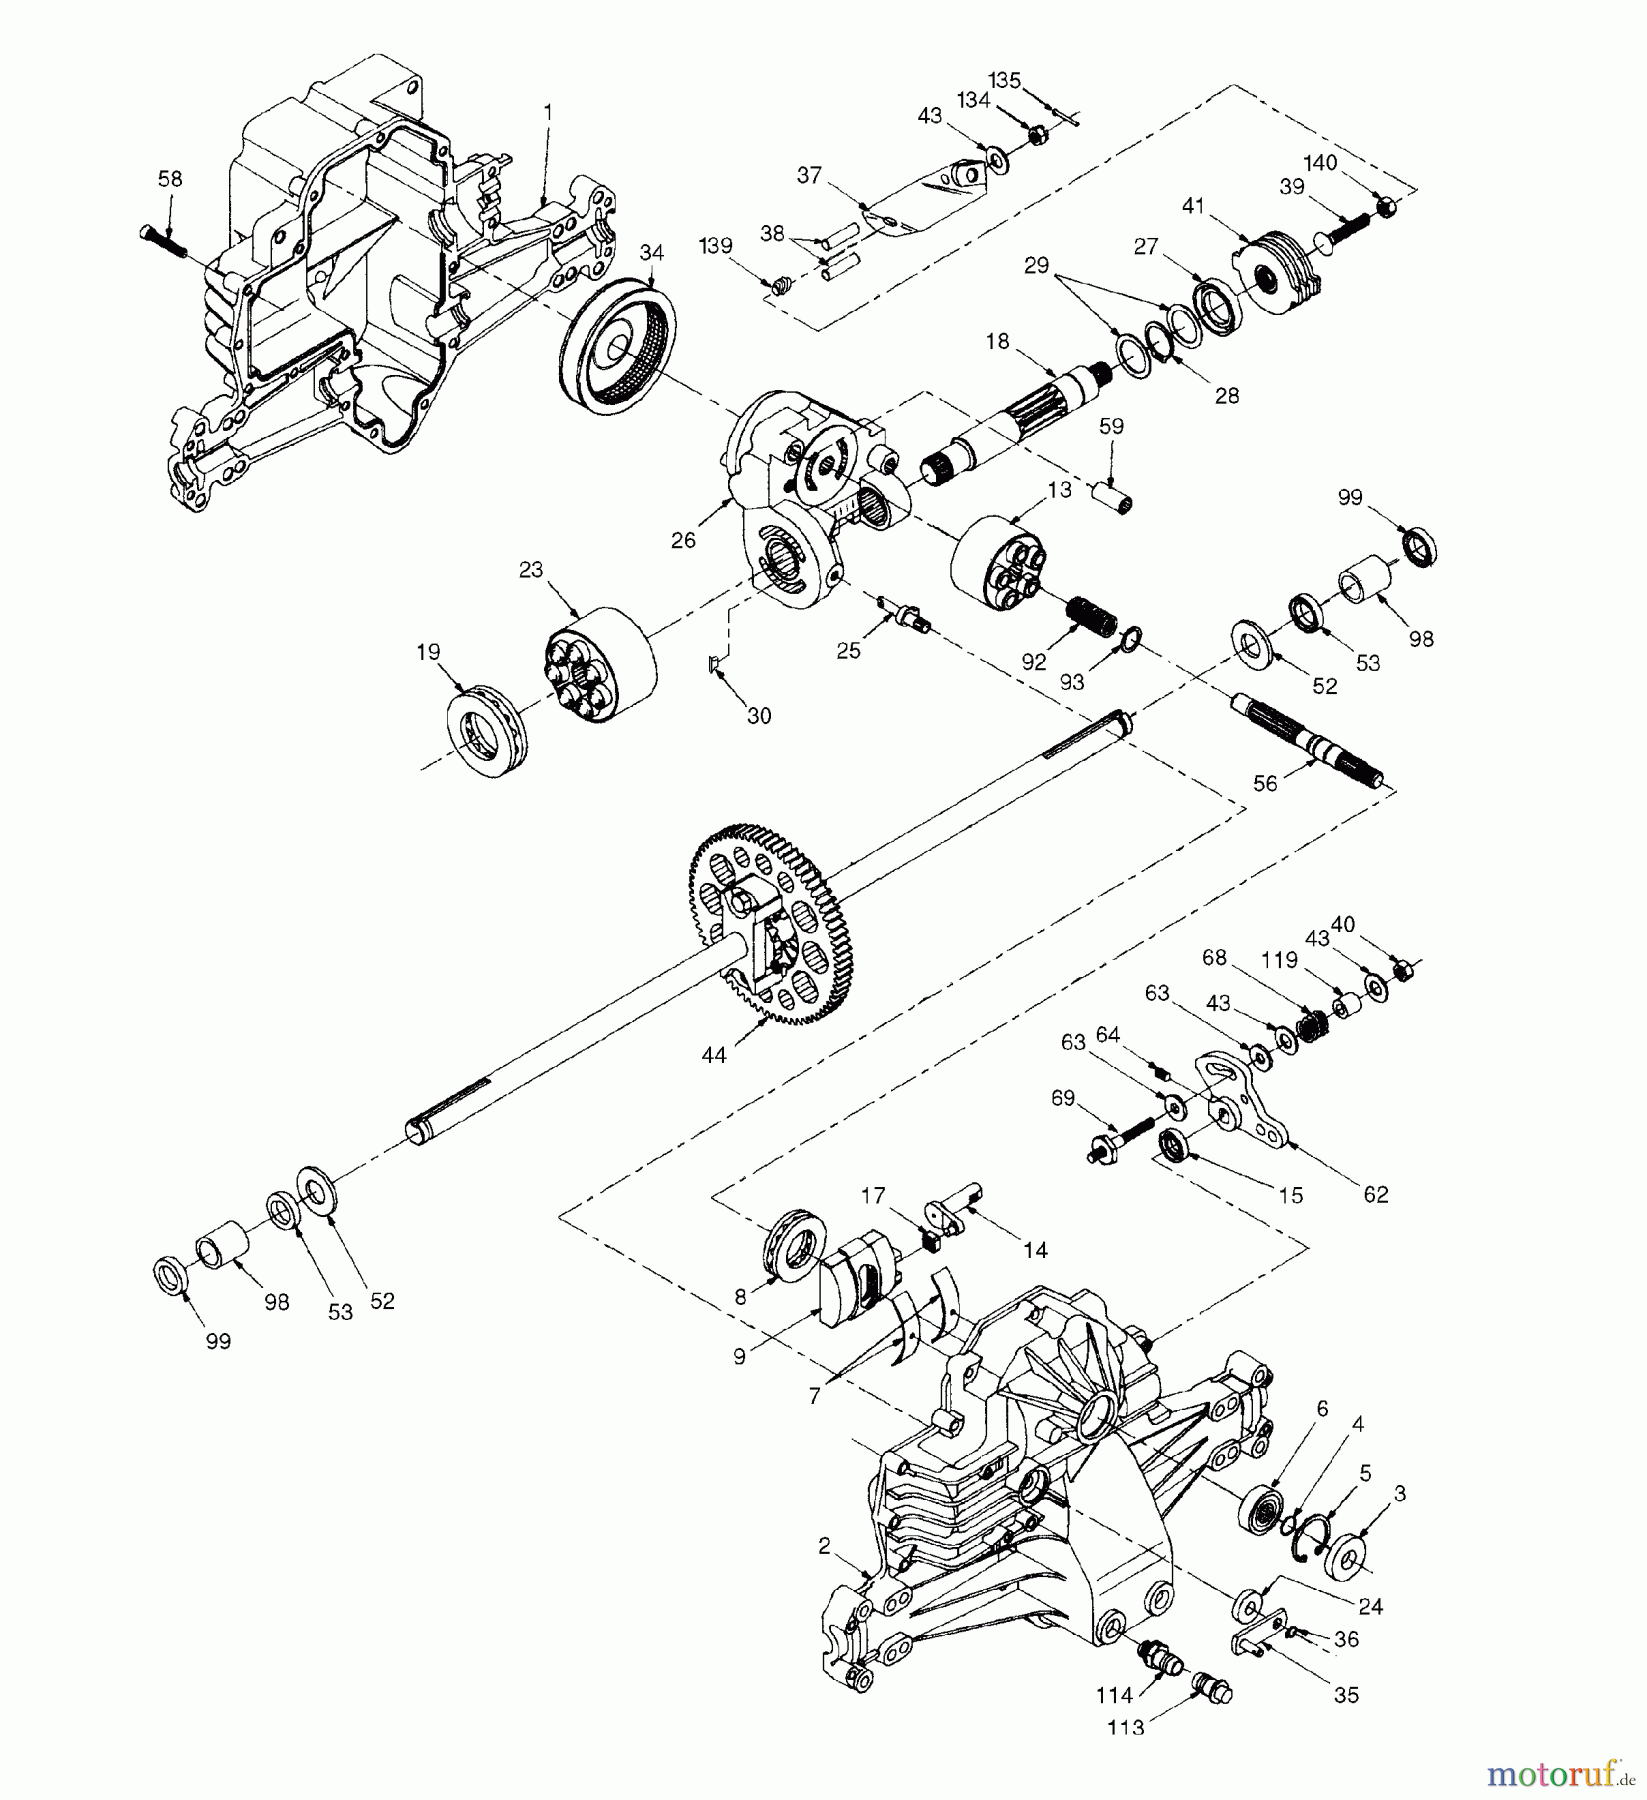  Husqvarna Rasen und Garten Traktoren LTH 130 (954830061B) - Husqvarna Lawn Tractor (1996-02 & After) Hydro Transaxle